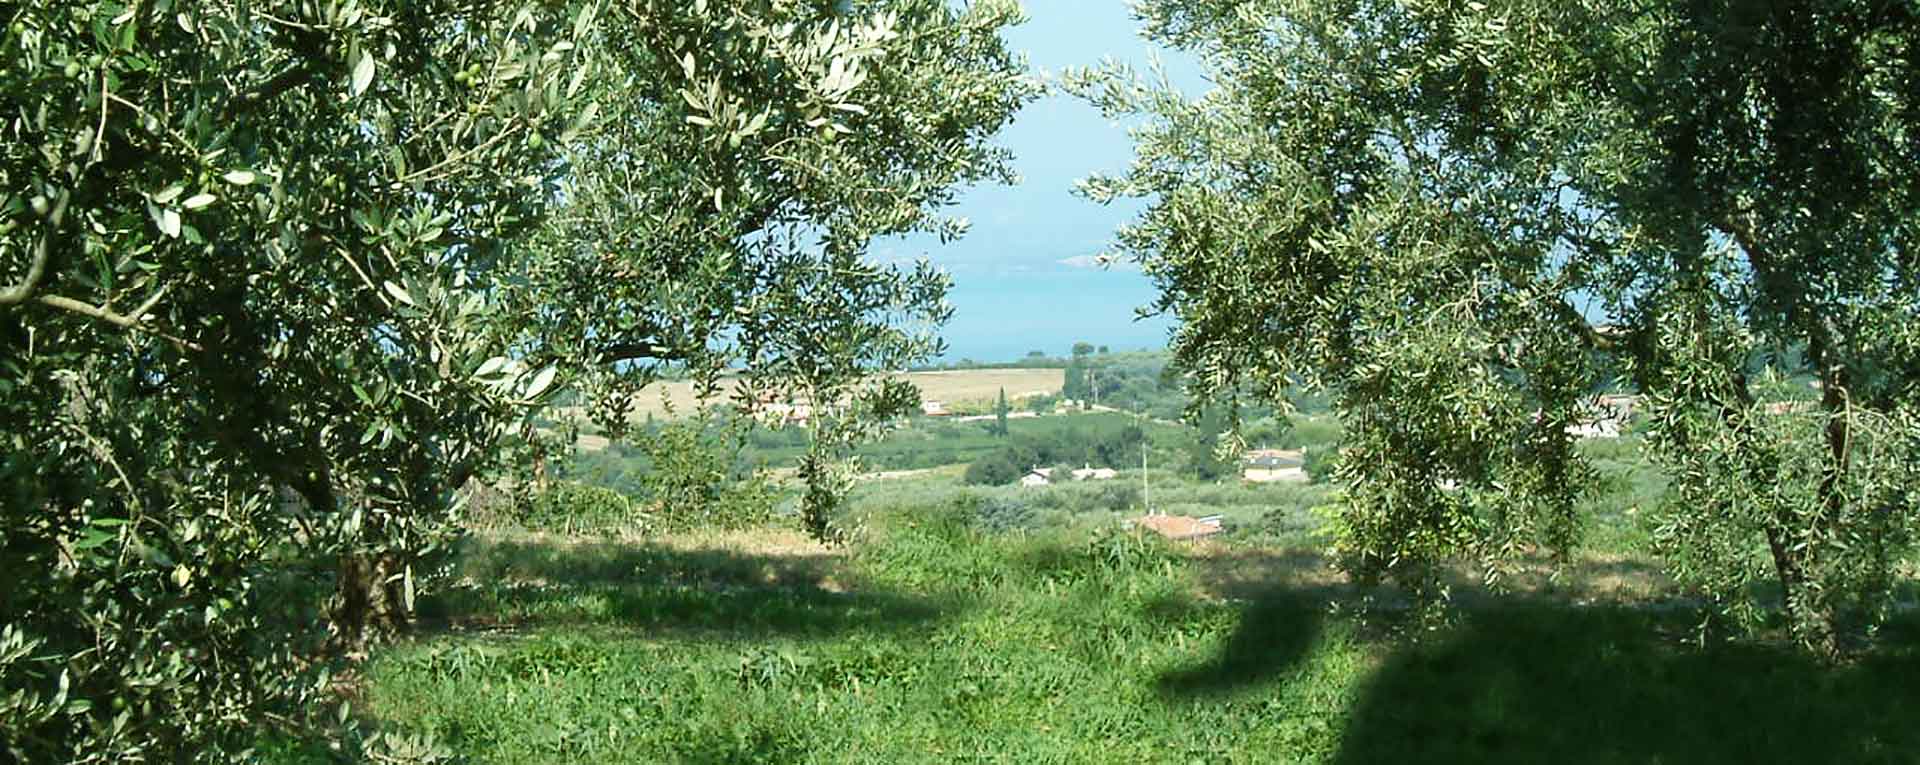 azienda agricola monte oliveto